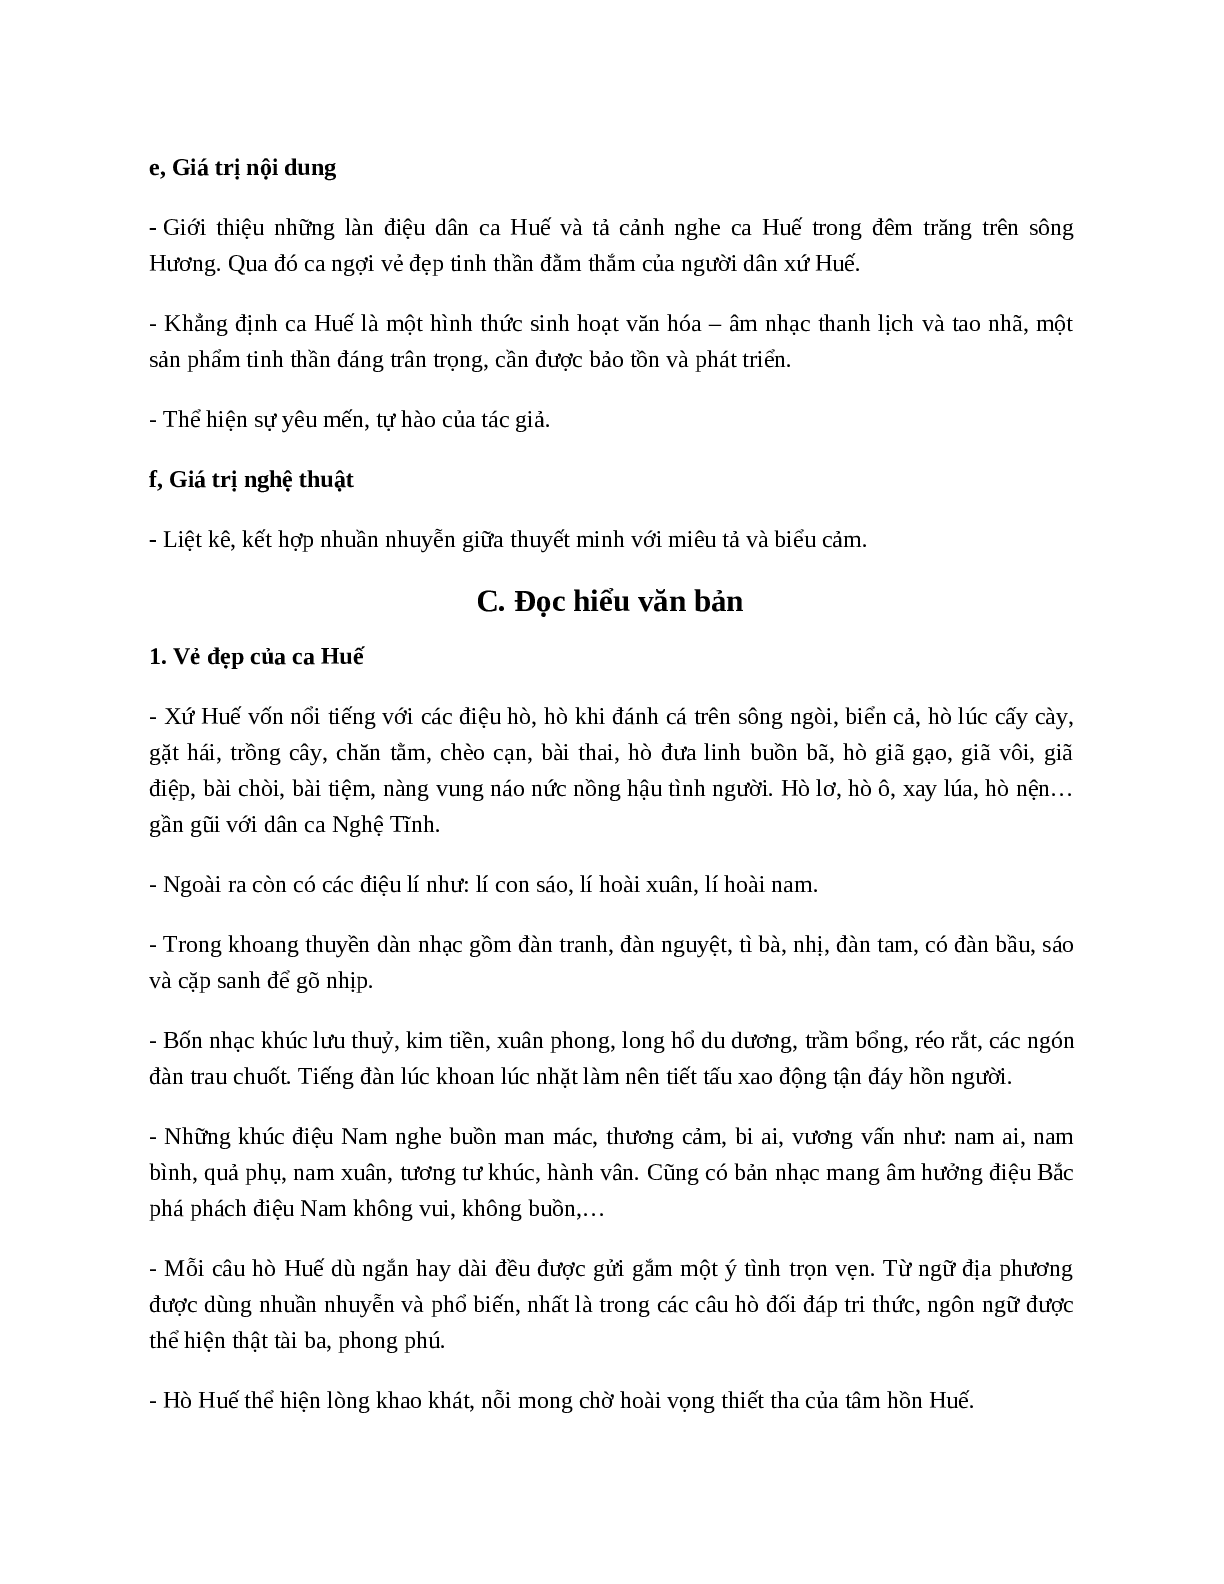 Ca Huế trên sông Hương - Tác giả tác phẩm - Ngữ văn lớp 7 (trang 2)